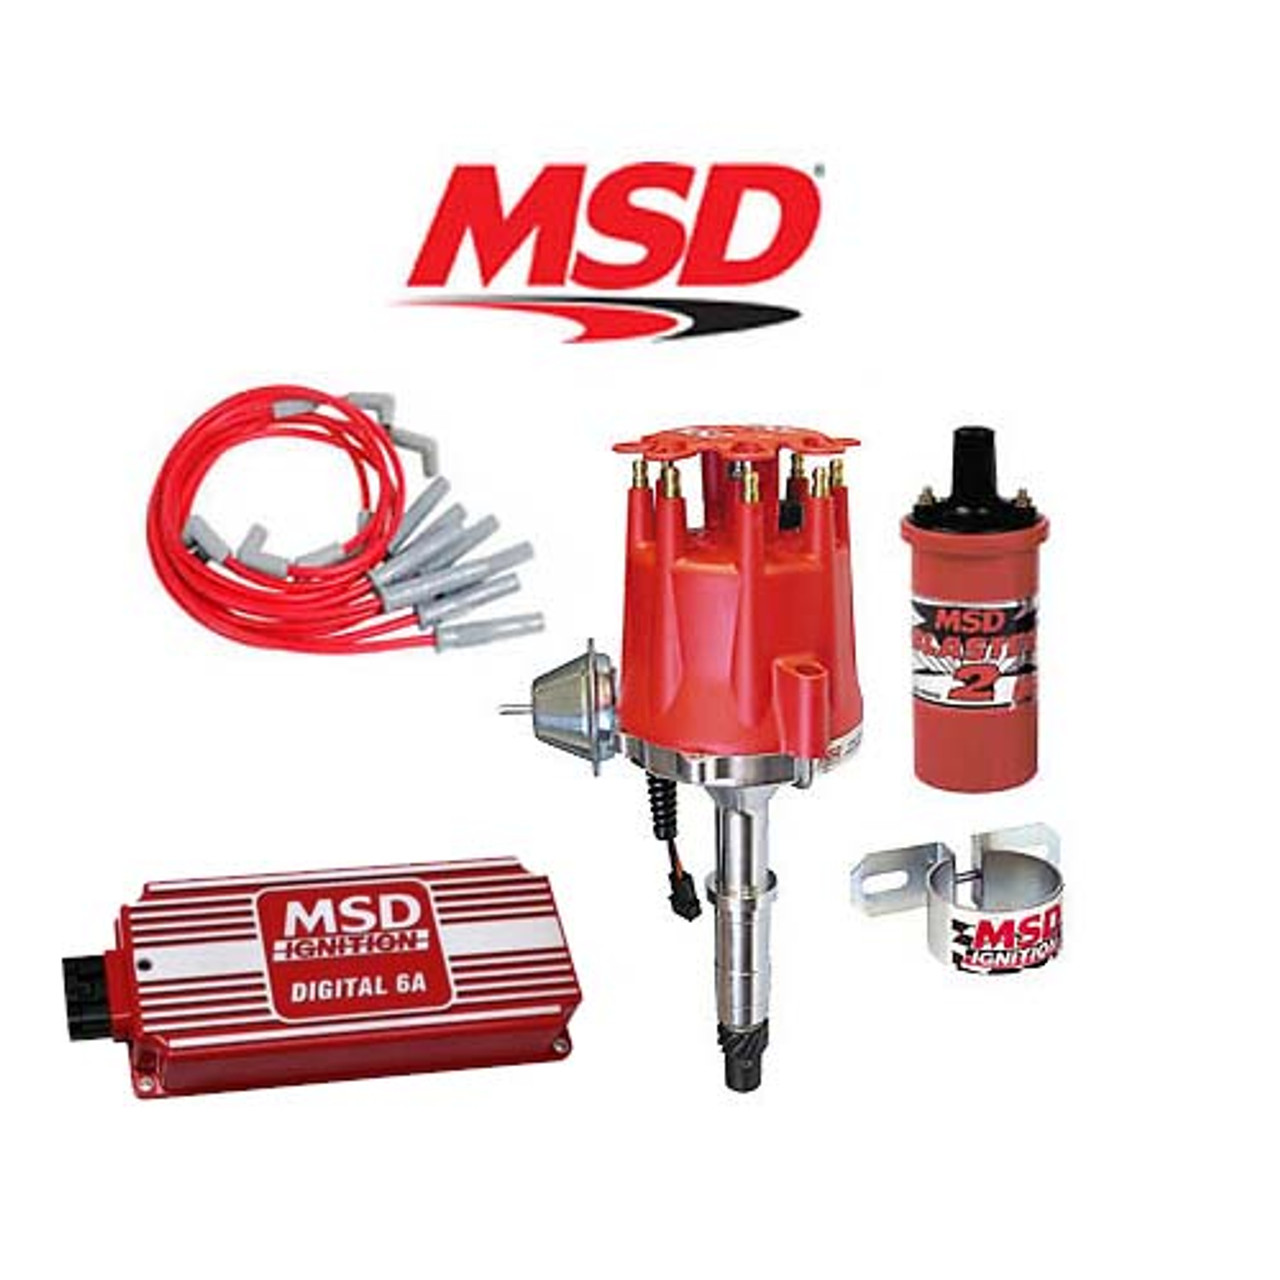 MSD 90211 Ignition Kit- Digital 6A/Distributor/Wires/Coil/Bracket AMC V8 290-401